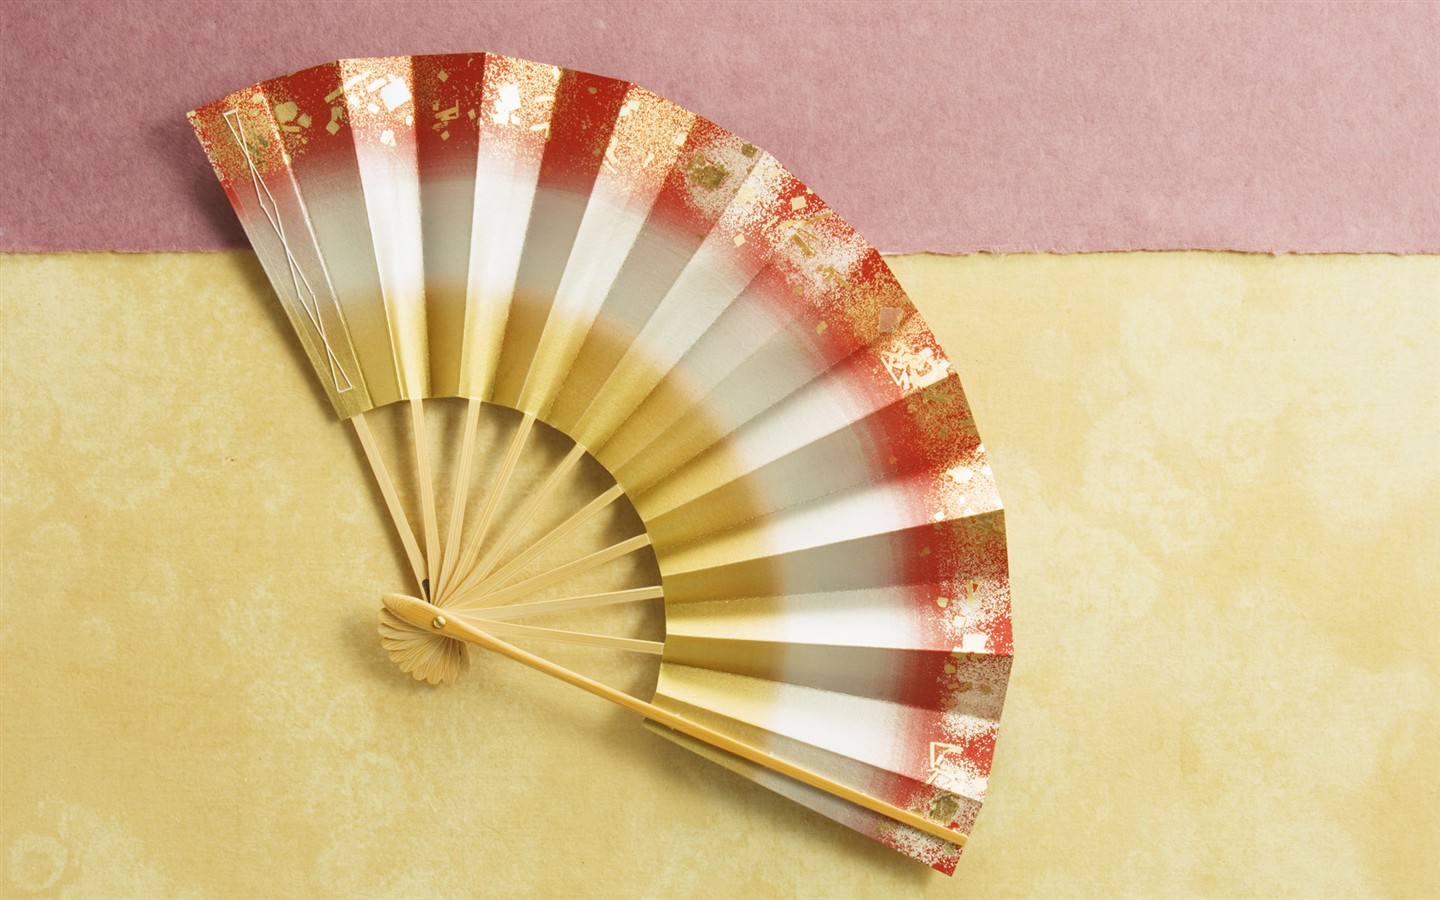 Fondos de año nuevo japonés Cultura #12 - 1440x900